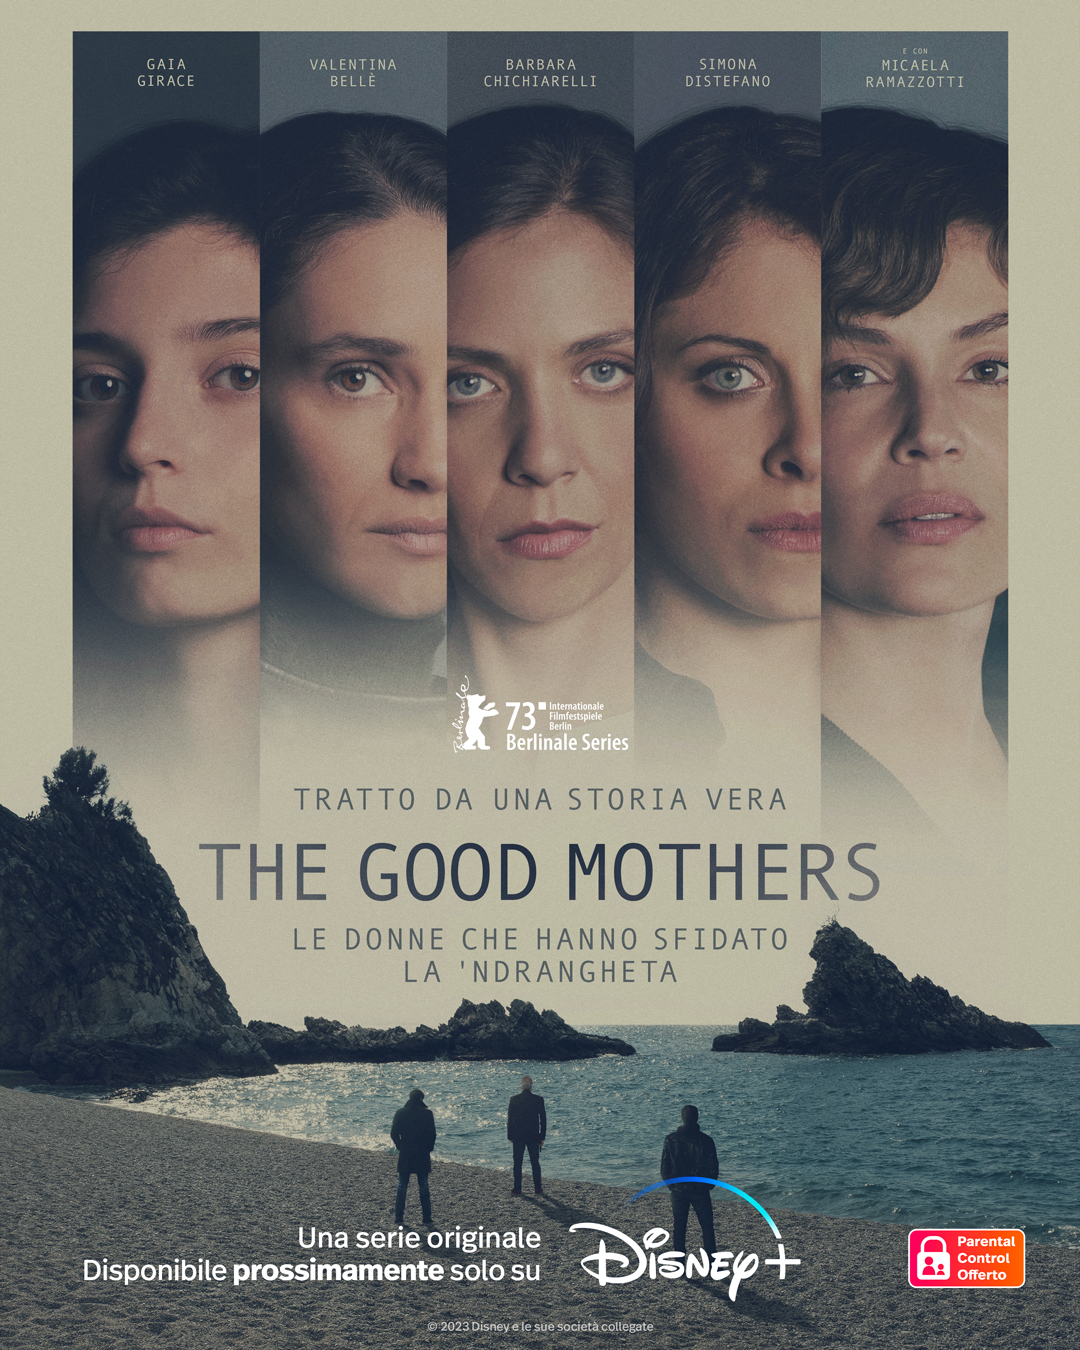 The Good Mothers Poster - Primo piano con i volti dei protagonisti in fila